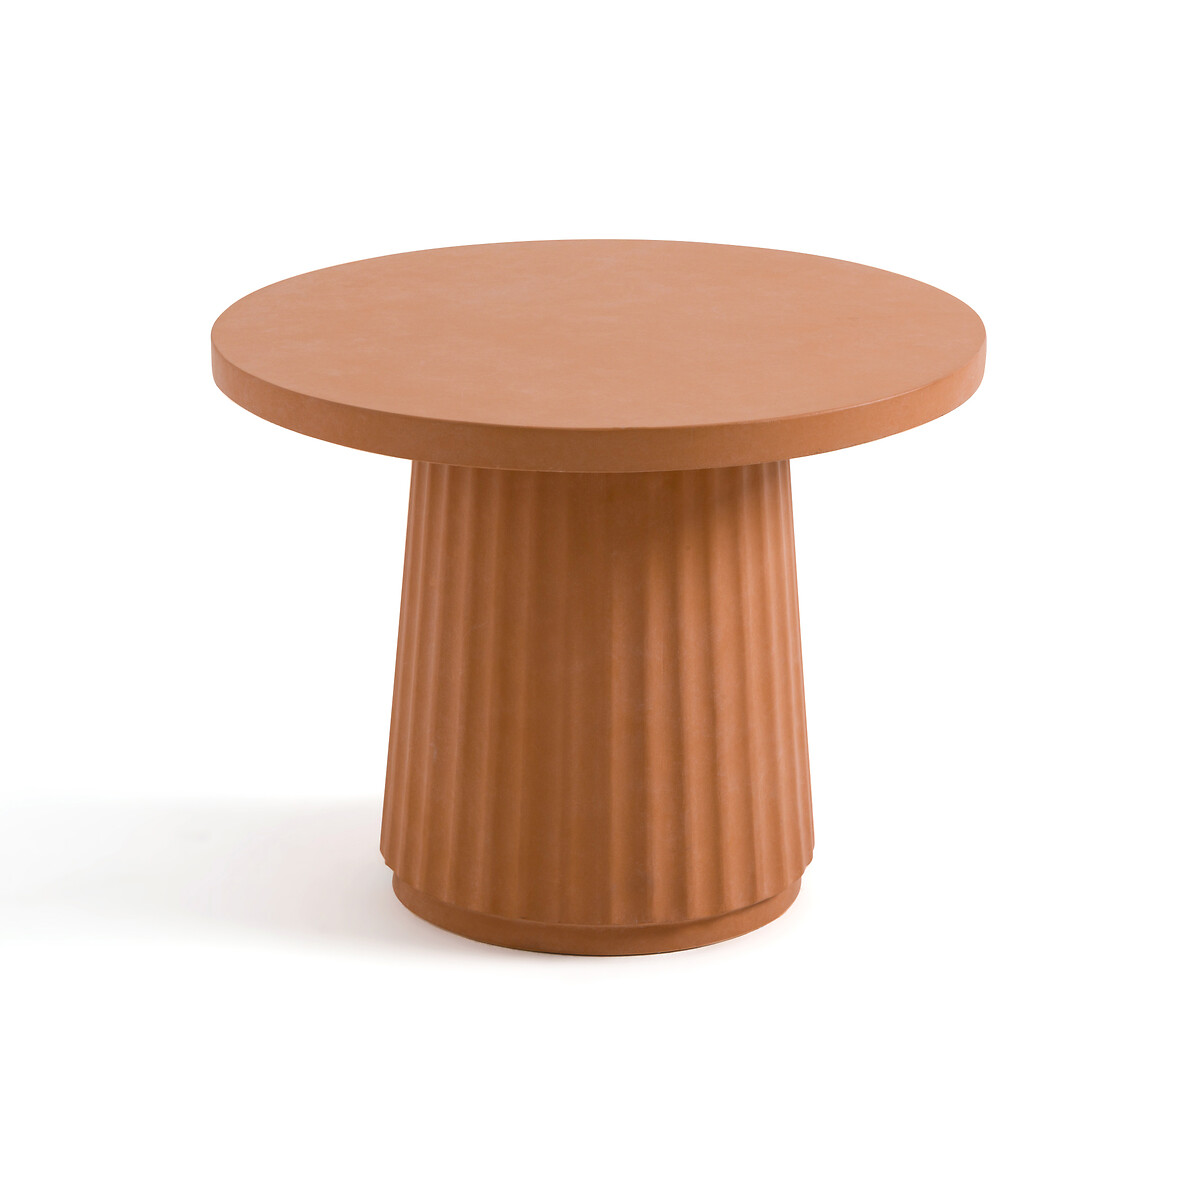 Стол журнальный из цементного волокна Cannelli единый размер оранжевый стол журнальный из акации и цементного волокна mdan единый размер серый